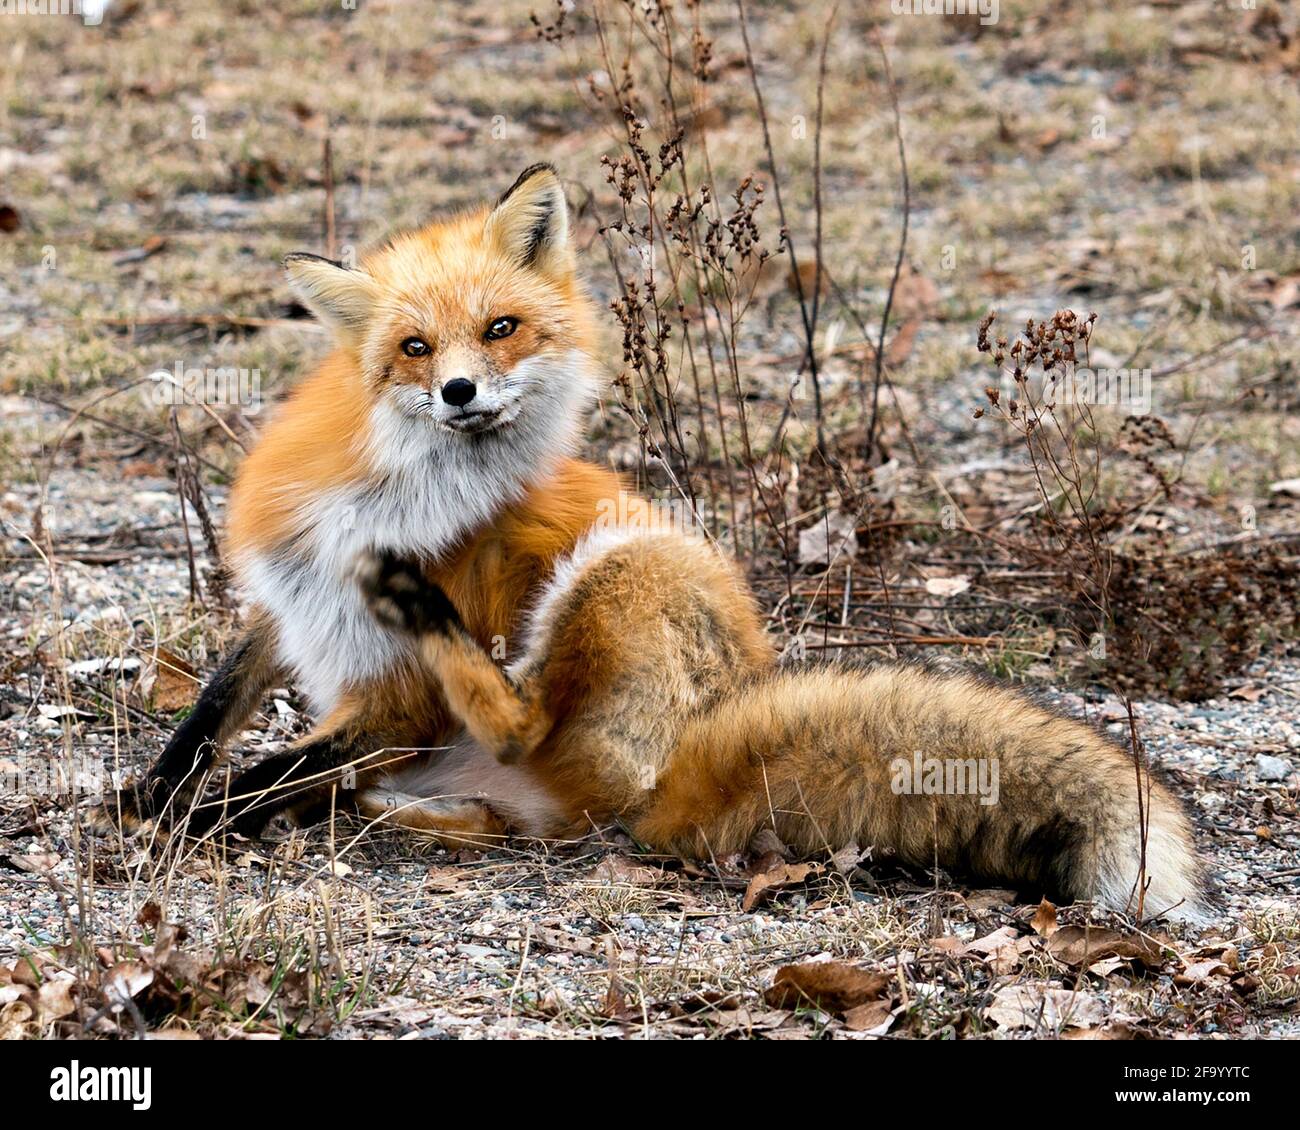 Red Fox primo piano guardando la fotocamera con sfondo sfocato primavera fogliame nel suo ambiente e habitat mostra coda boscaglia, pelliccia. Immagine FOX. Immagine. Foto Stock